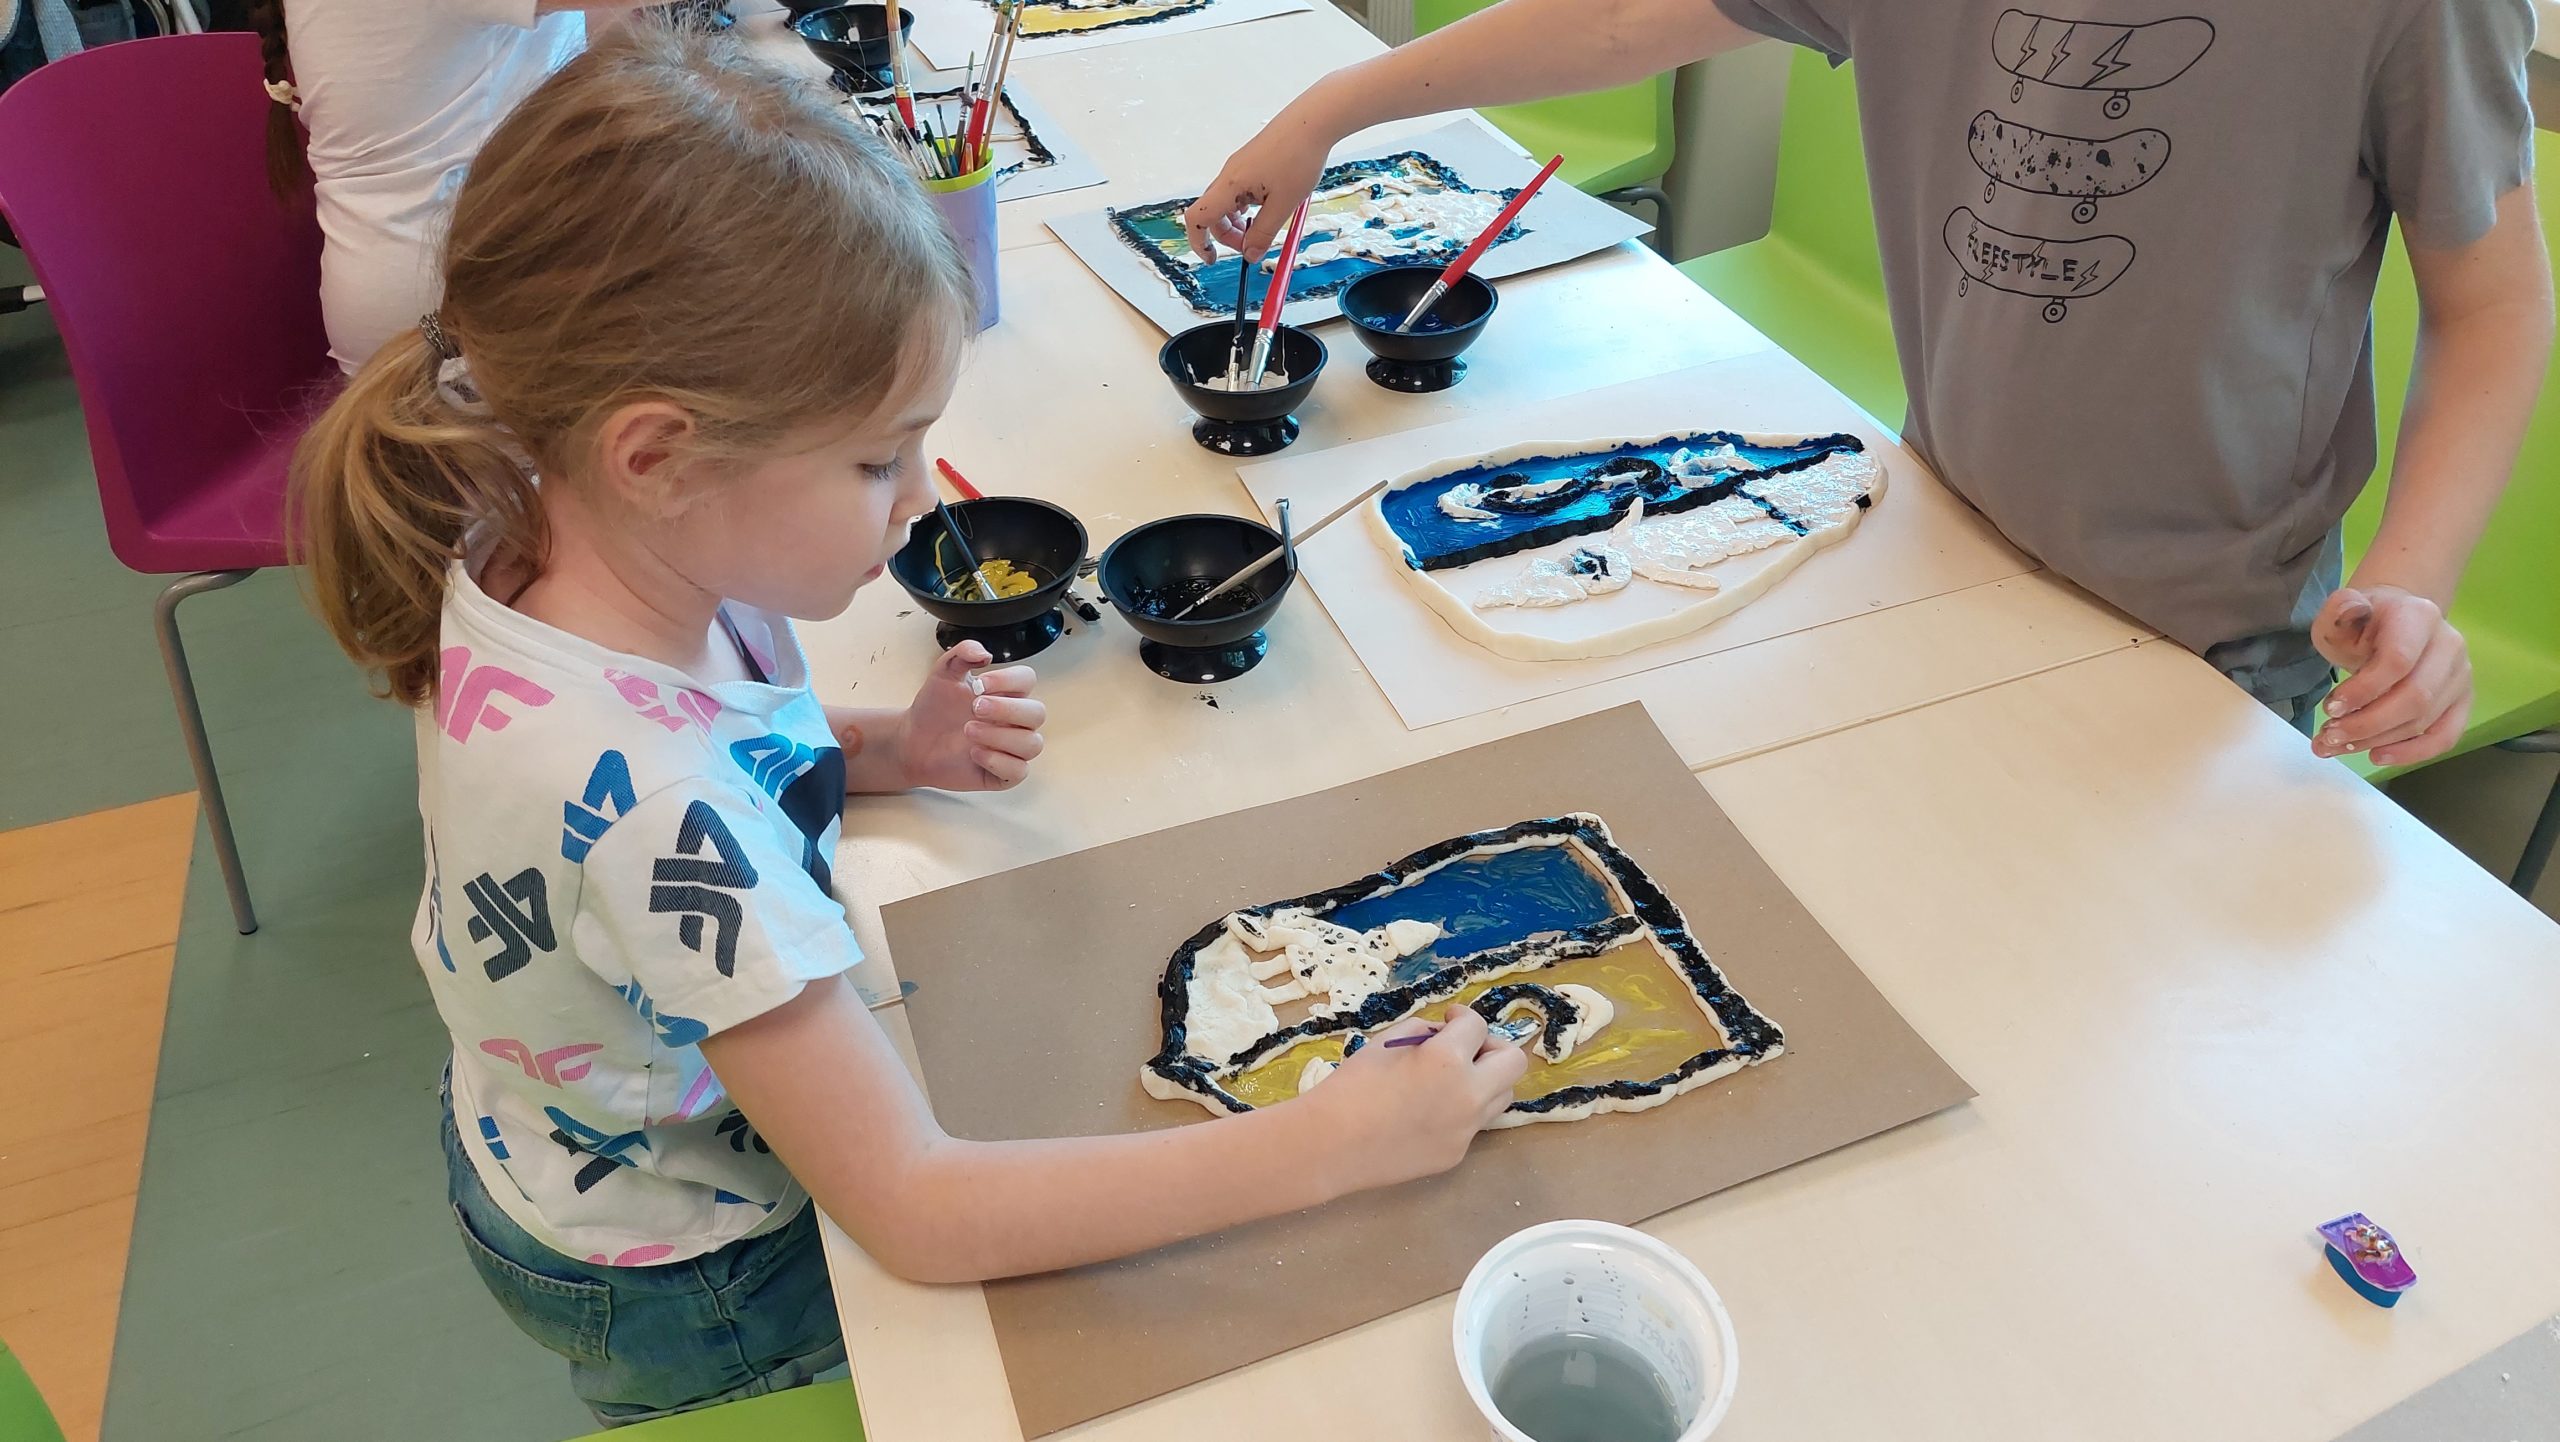 Czytelnia. Dziewczynka stoi przy stole i kończy malowanie farbami swojego herbu. Na stole pojemniki z farbami, pędzle.